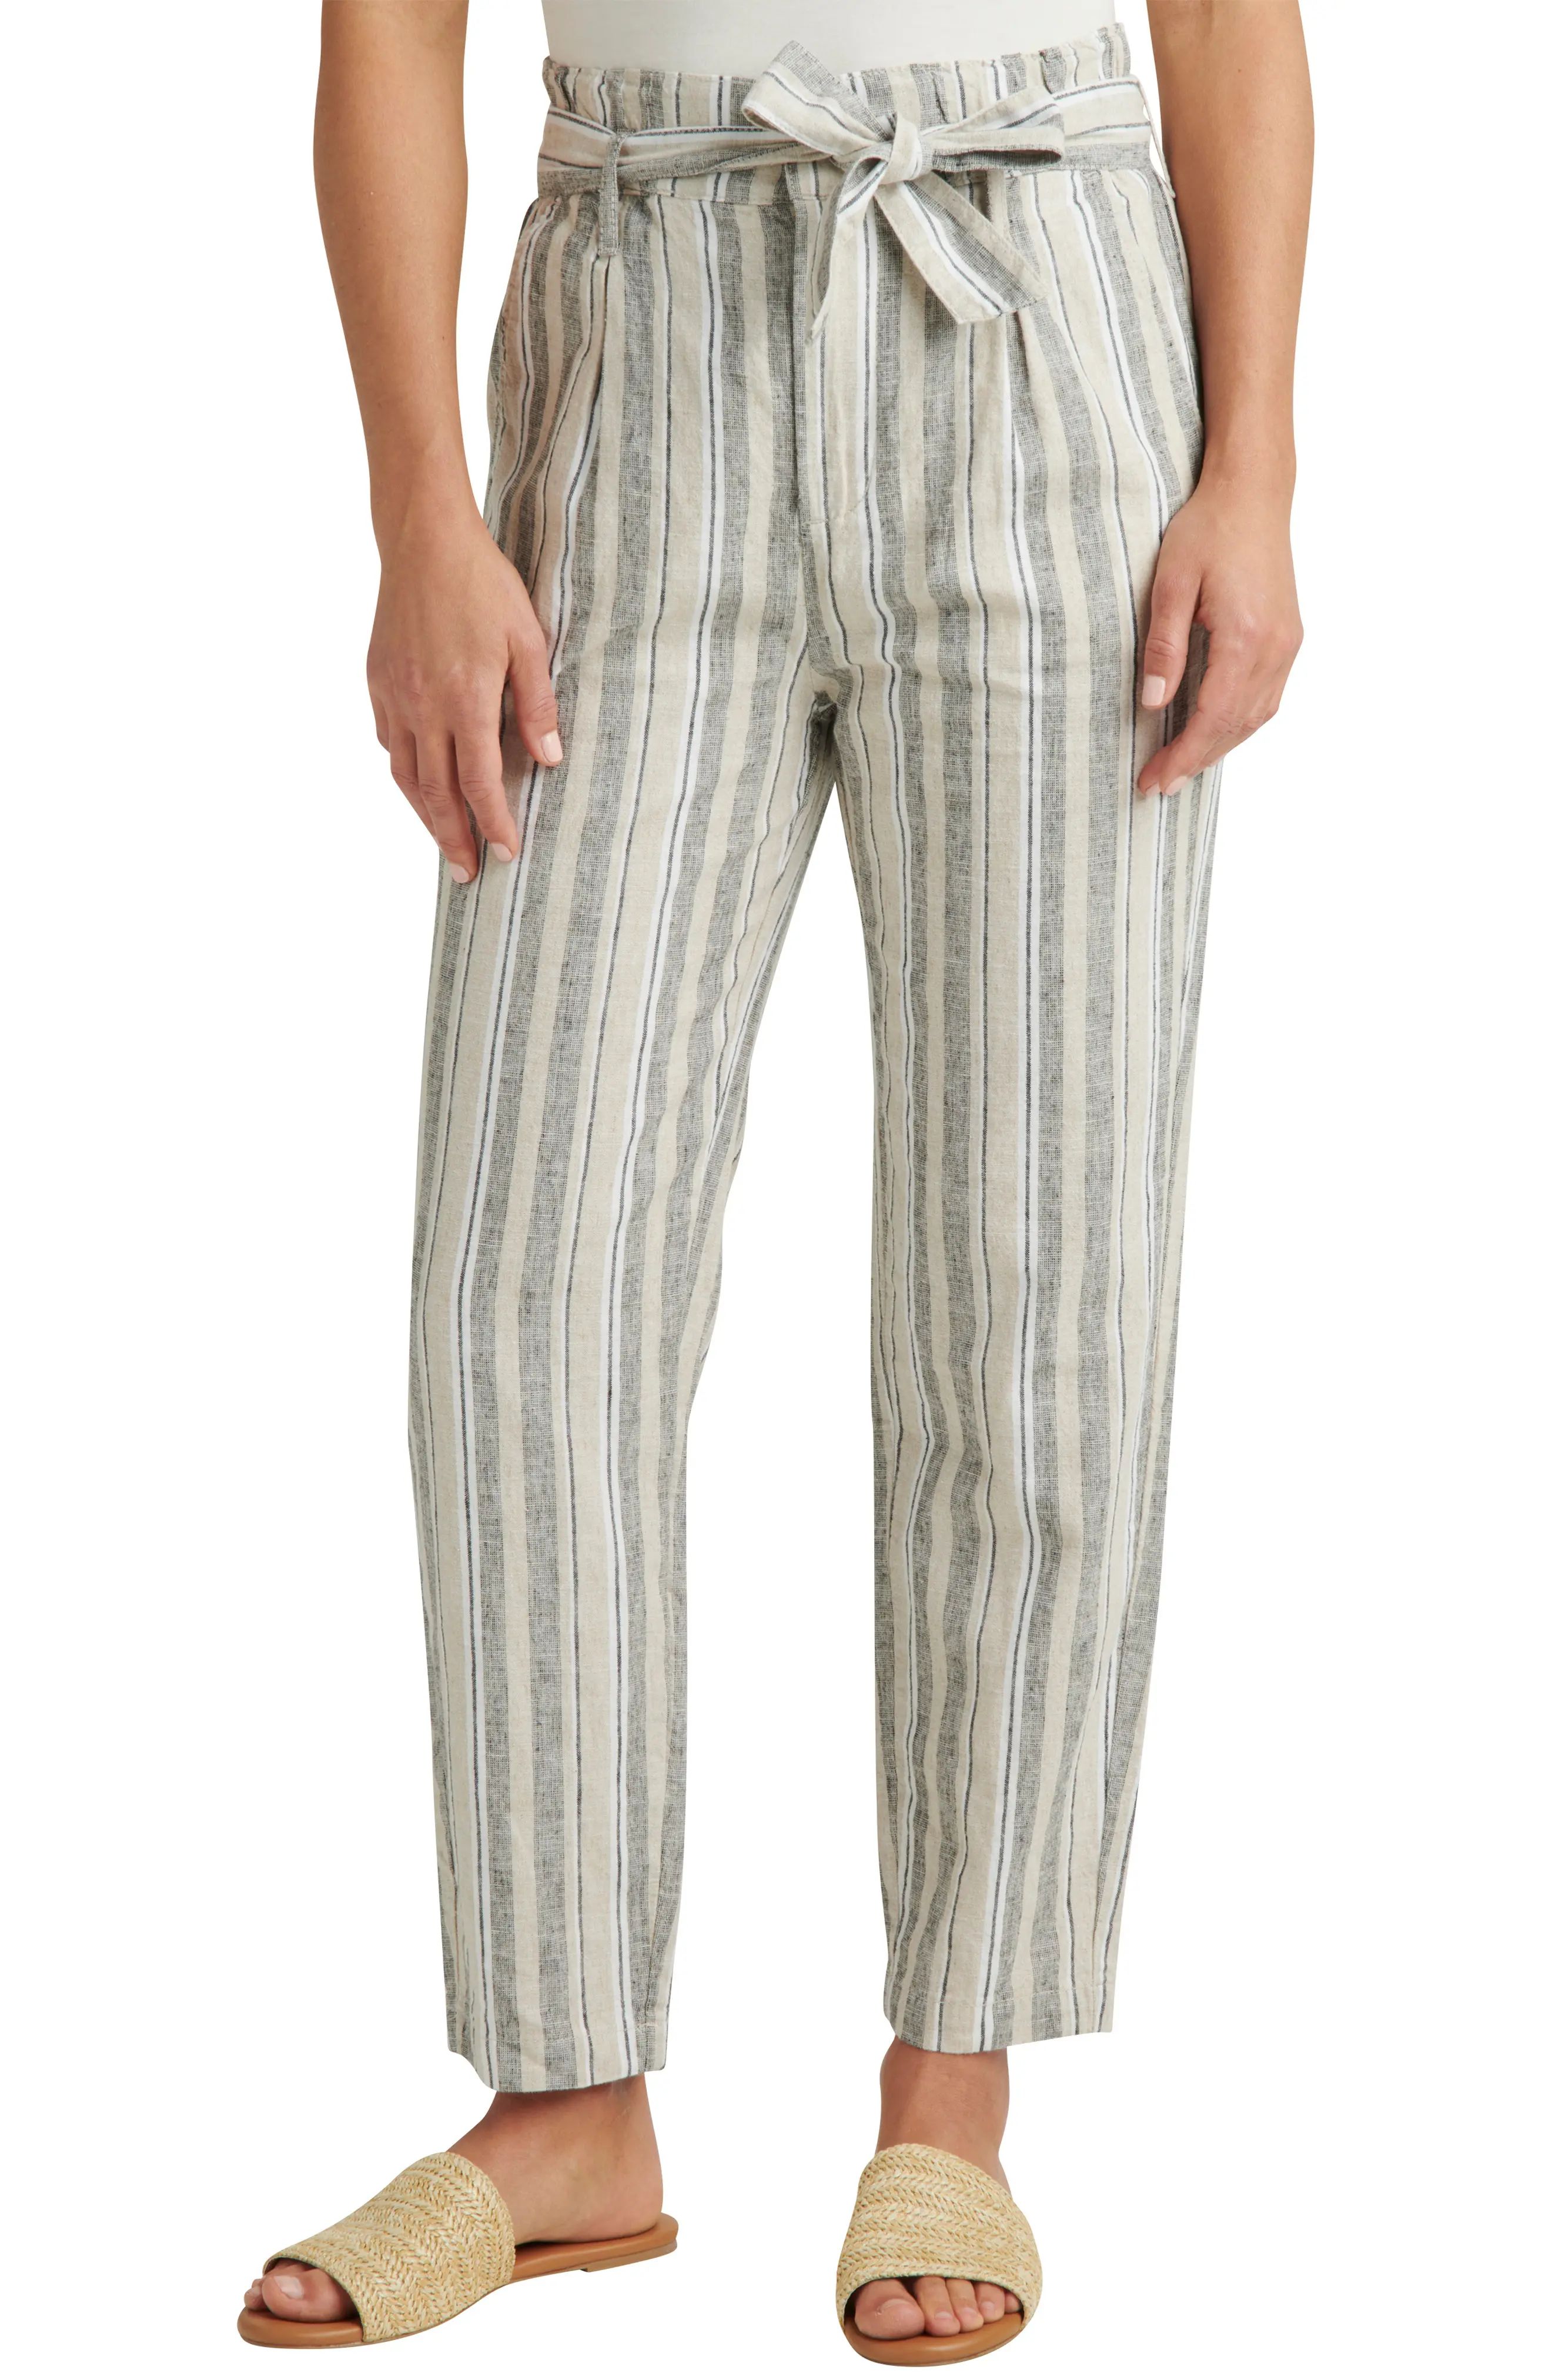 Jag Jeans Belted High Waist Linen Blend Tapered Pants in Linen Stripe at Nordstrom, Size 16 | Nordstrom